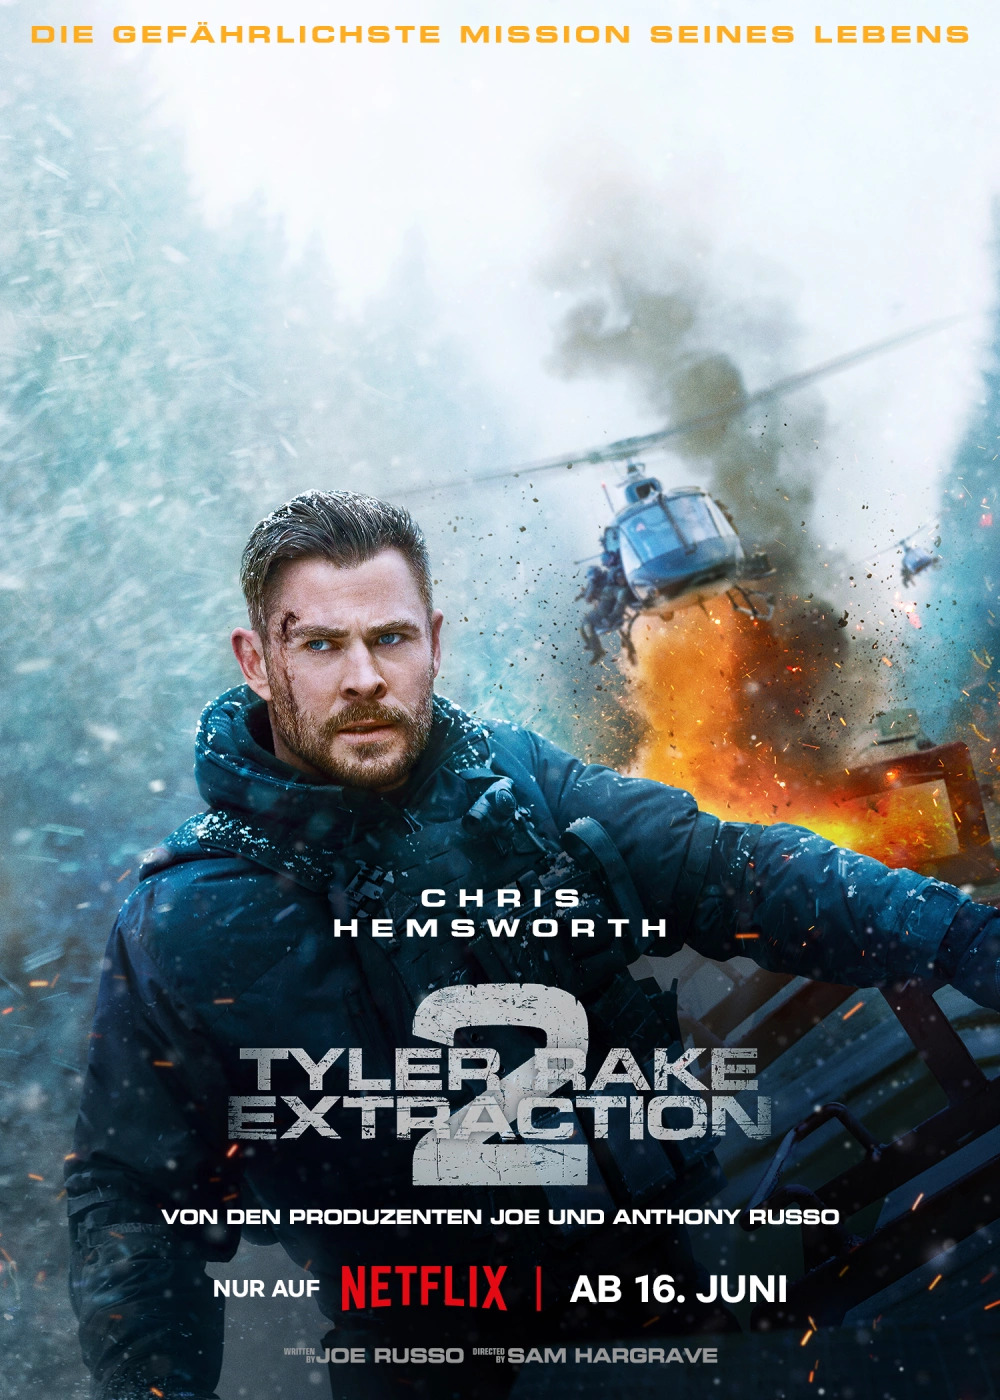 Tyler Rake Extraction 2 Trailer & Poster 3